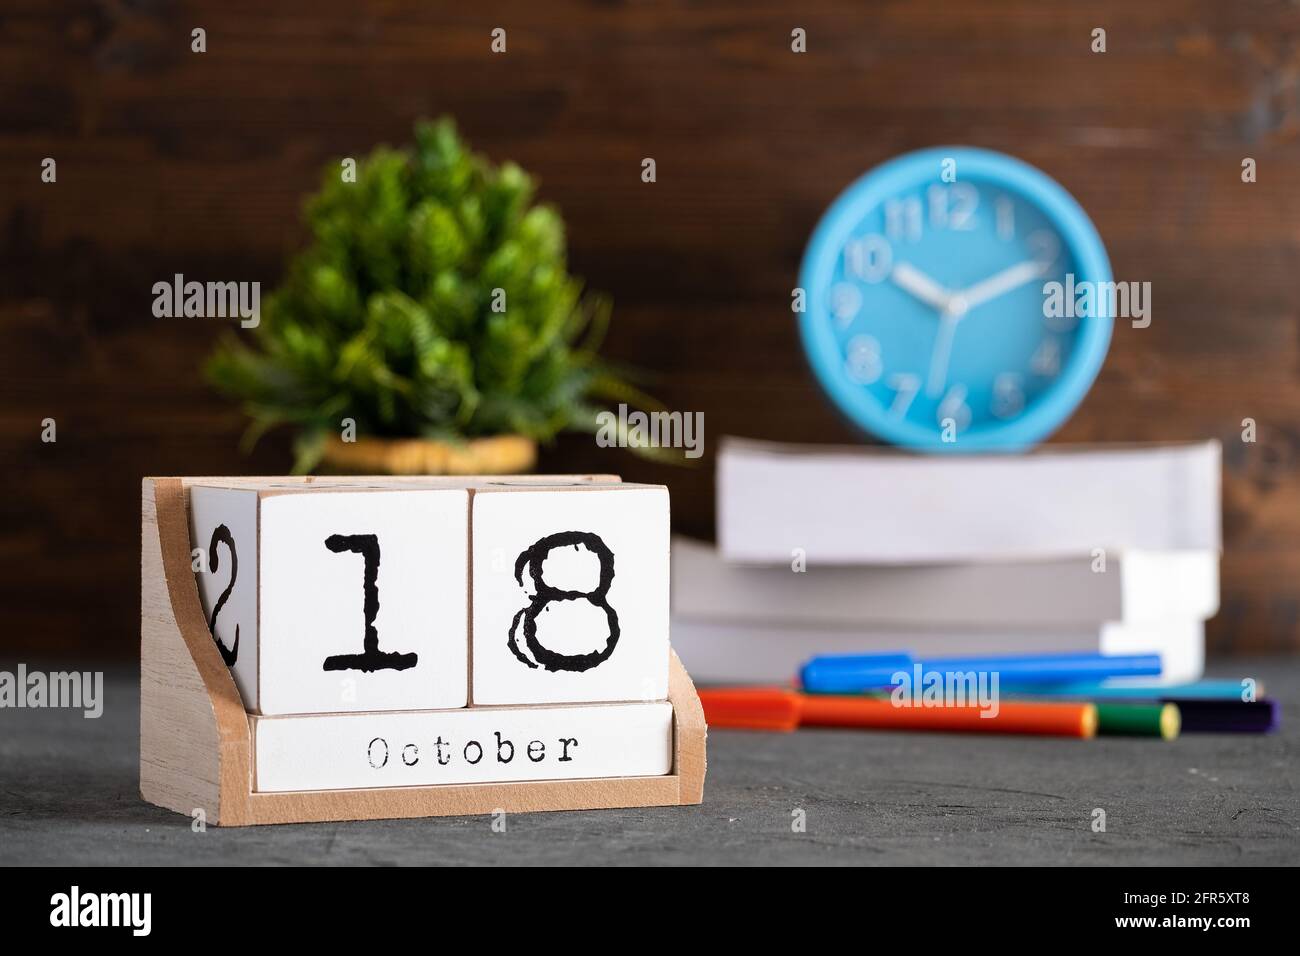 18 octobre. Octobre 18 calendrier cube en bois avec objets flous sur fond. Banque D'Images